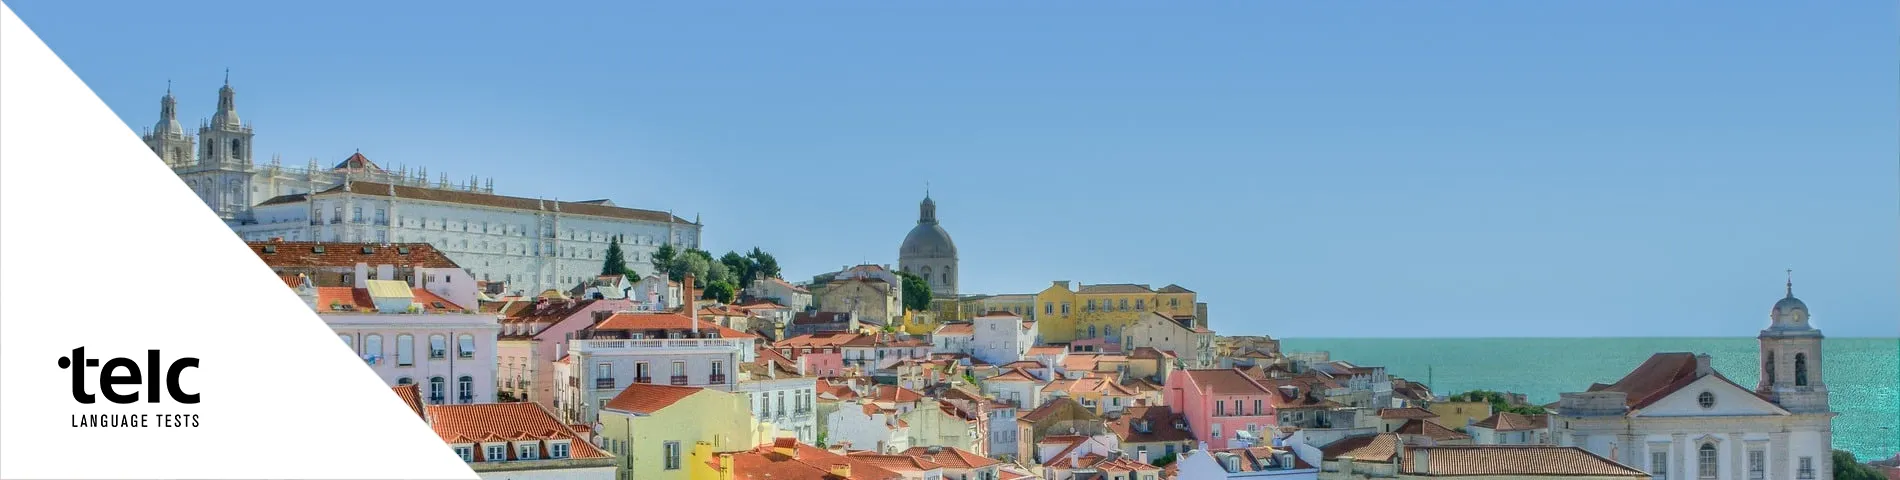 Lizbona - TELC